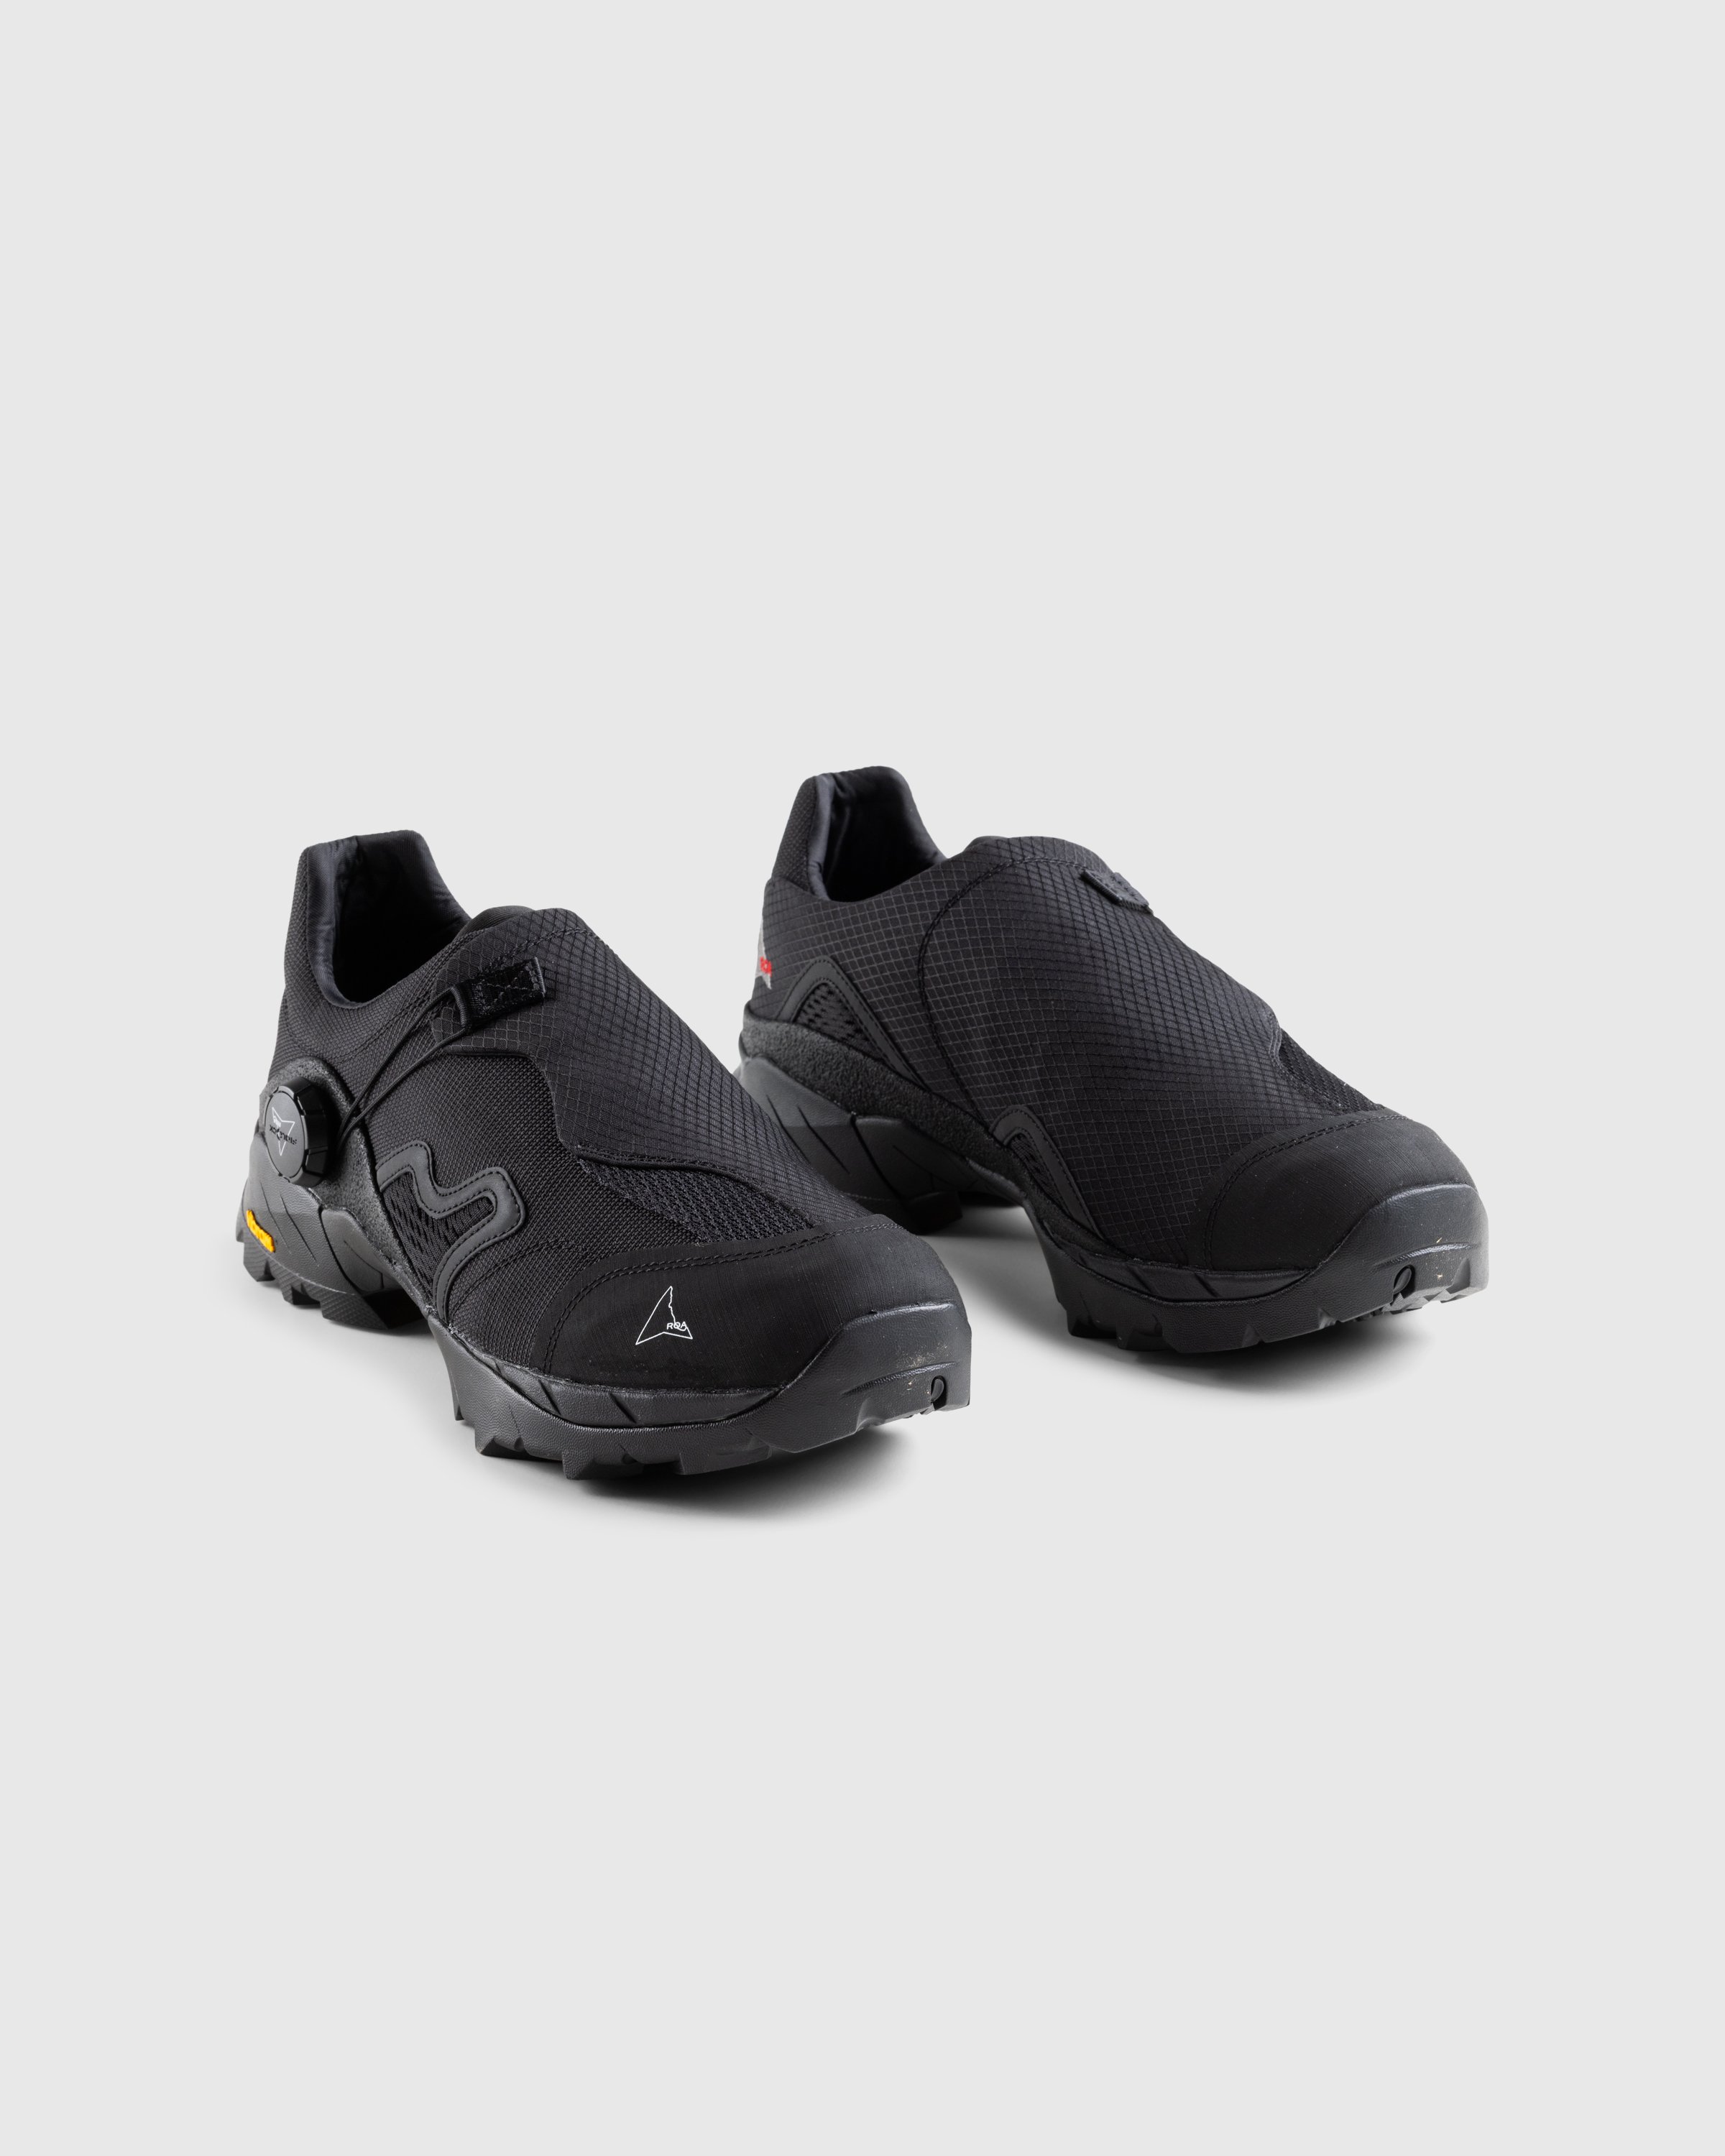 ROA - Minaar Black - Footwear -  - Image 3